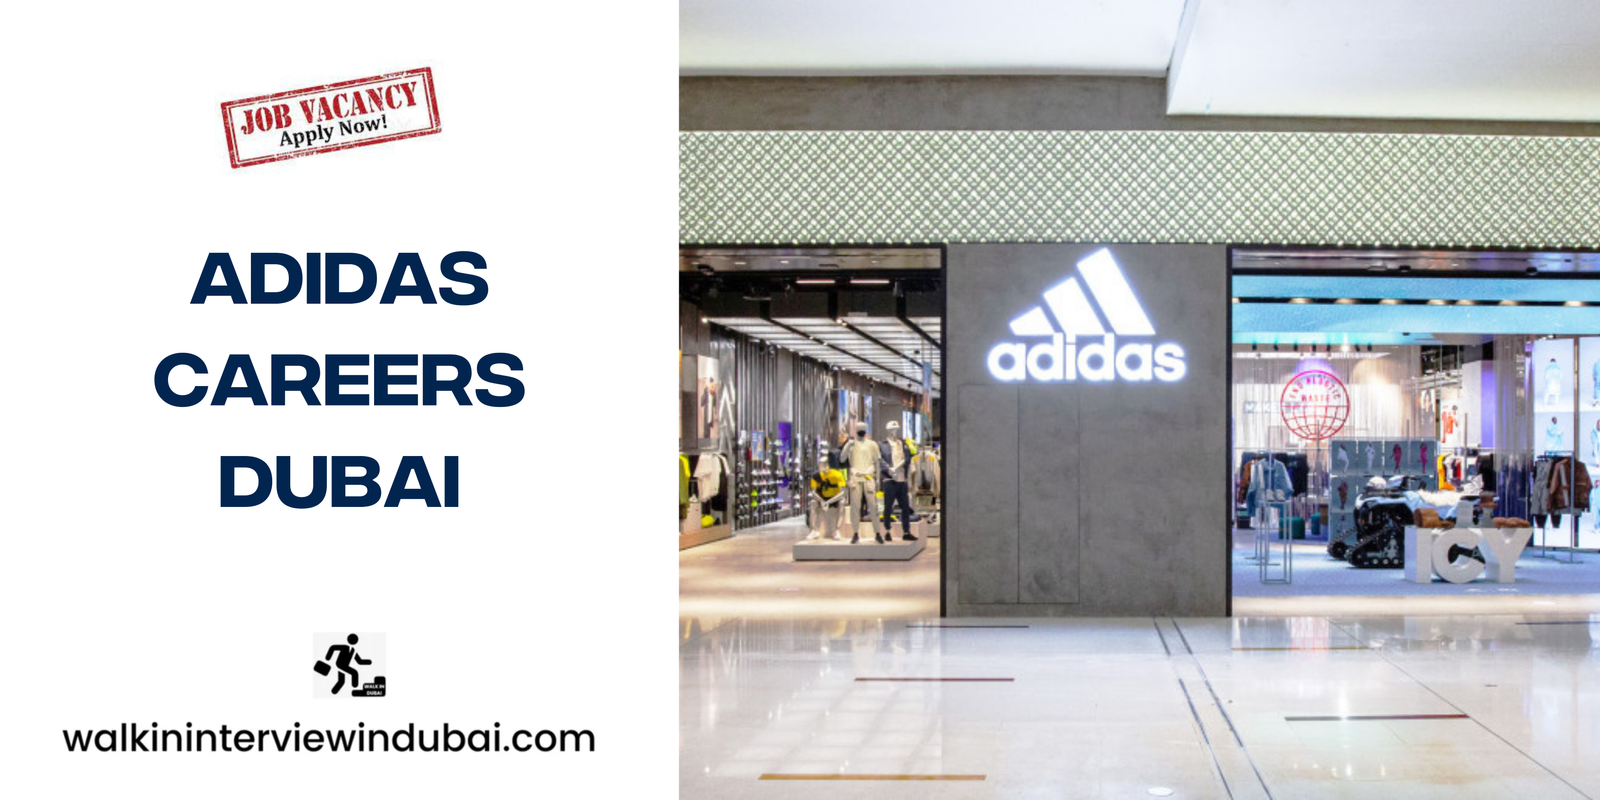 Adidas Careers in Dubai